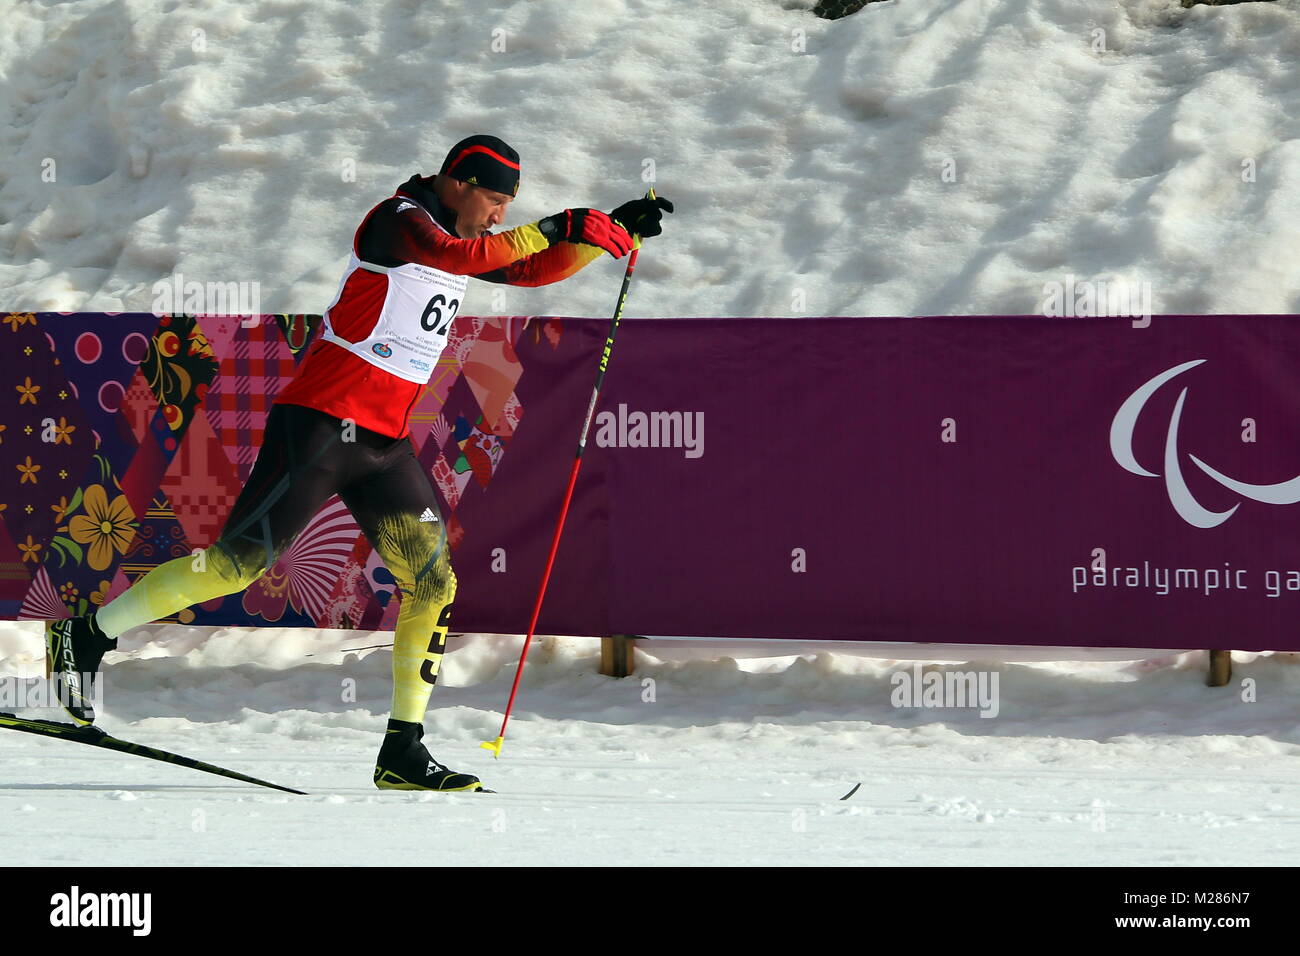 Tino UHLIG SV Mitteltal-Obertal - Zweites der deutschen Formation Paralympischen Mannschaft dans Sotschi Sotschi 2014 Jeux paralympiques Jeux paralympiques d'hiver de Sotchi / 2014 Banque D'Images